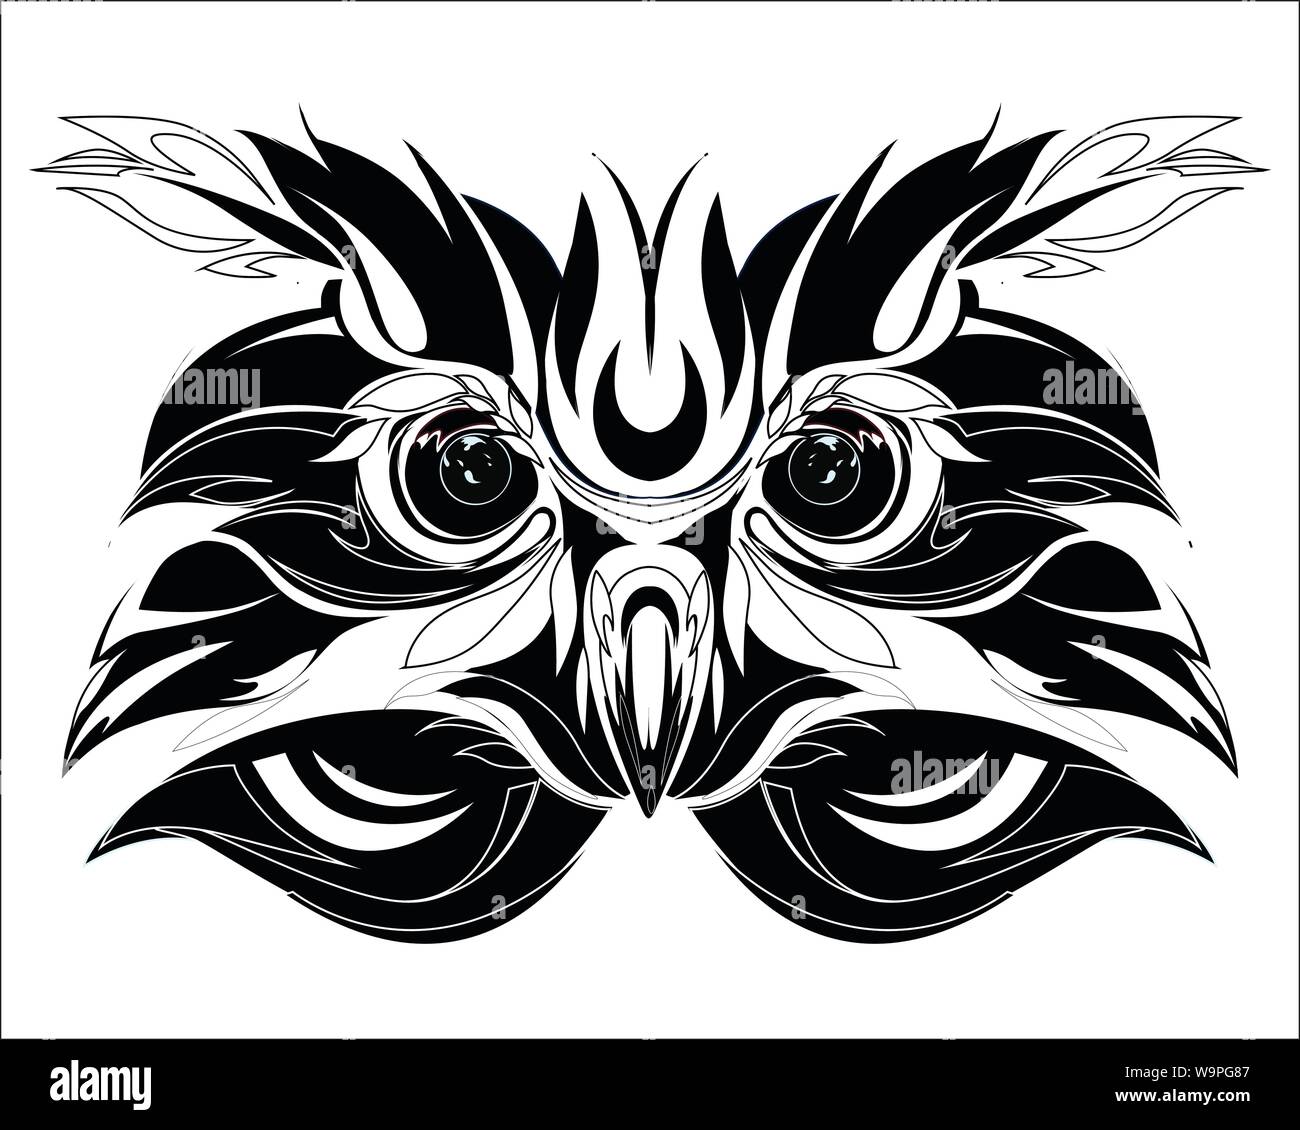 Tatouage tribal chouette dessin vectoriel Illustration de Vecteur